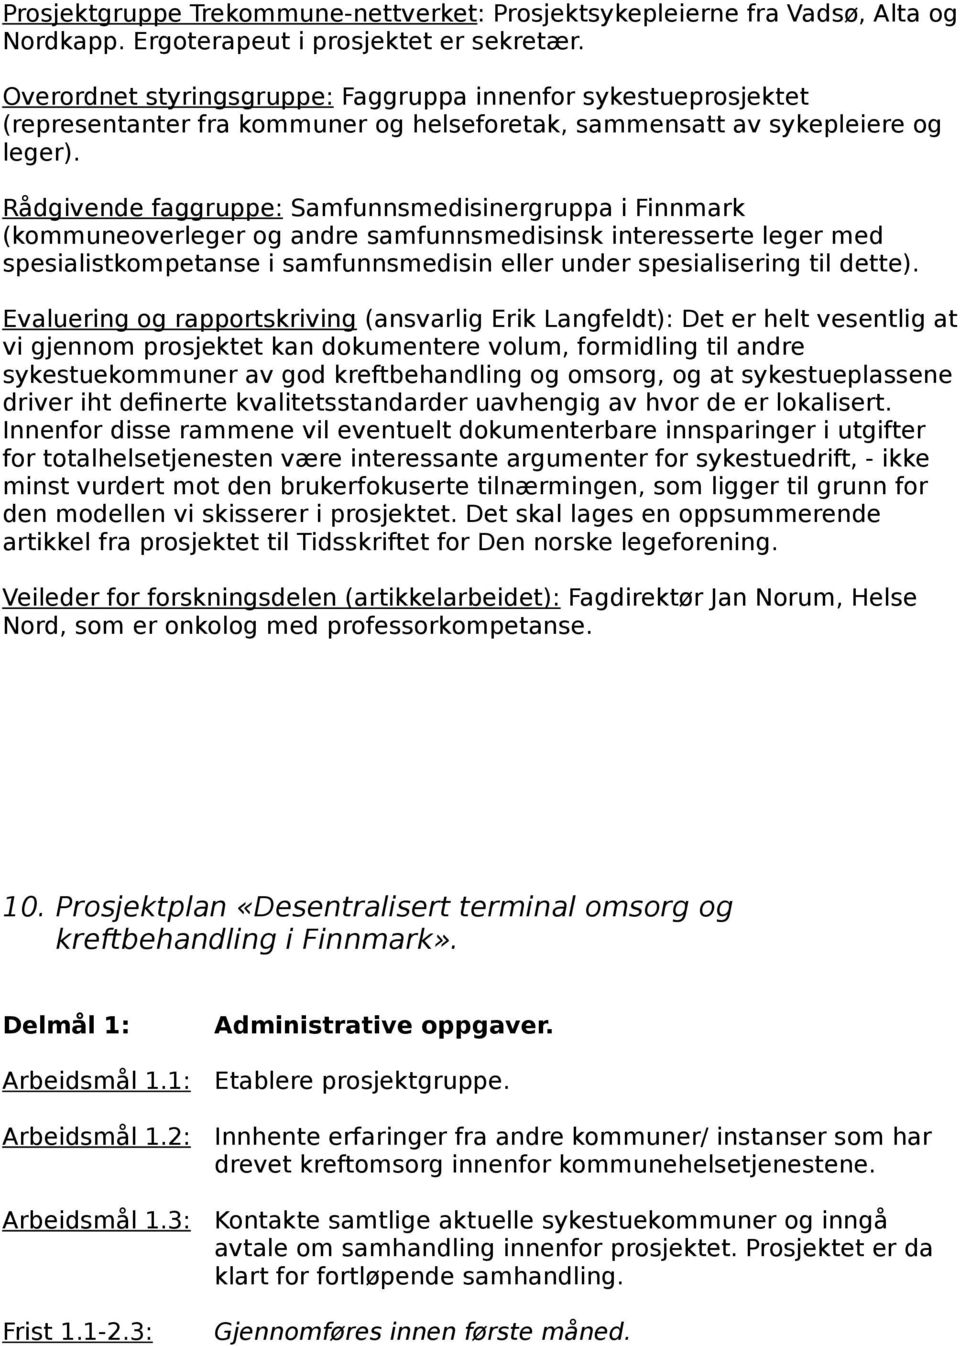 Rådgivende faggruppe: Samfunnsmedisinergruppa i Finnmark (kommuneoverleger og andre samfunnsmedisinsk interesserte leger med spesialistkompetanse i samfunnsmedisin eller under spesialisering til